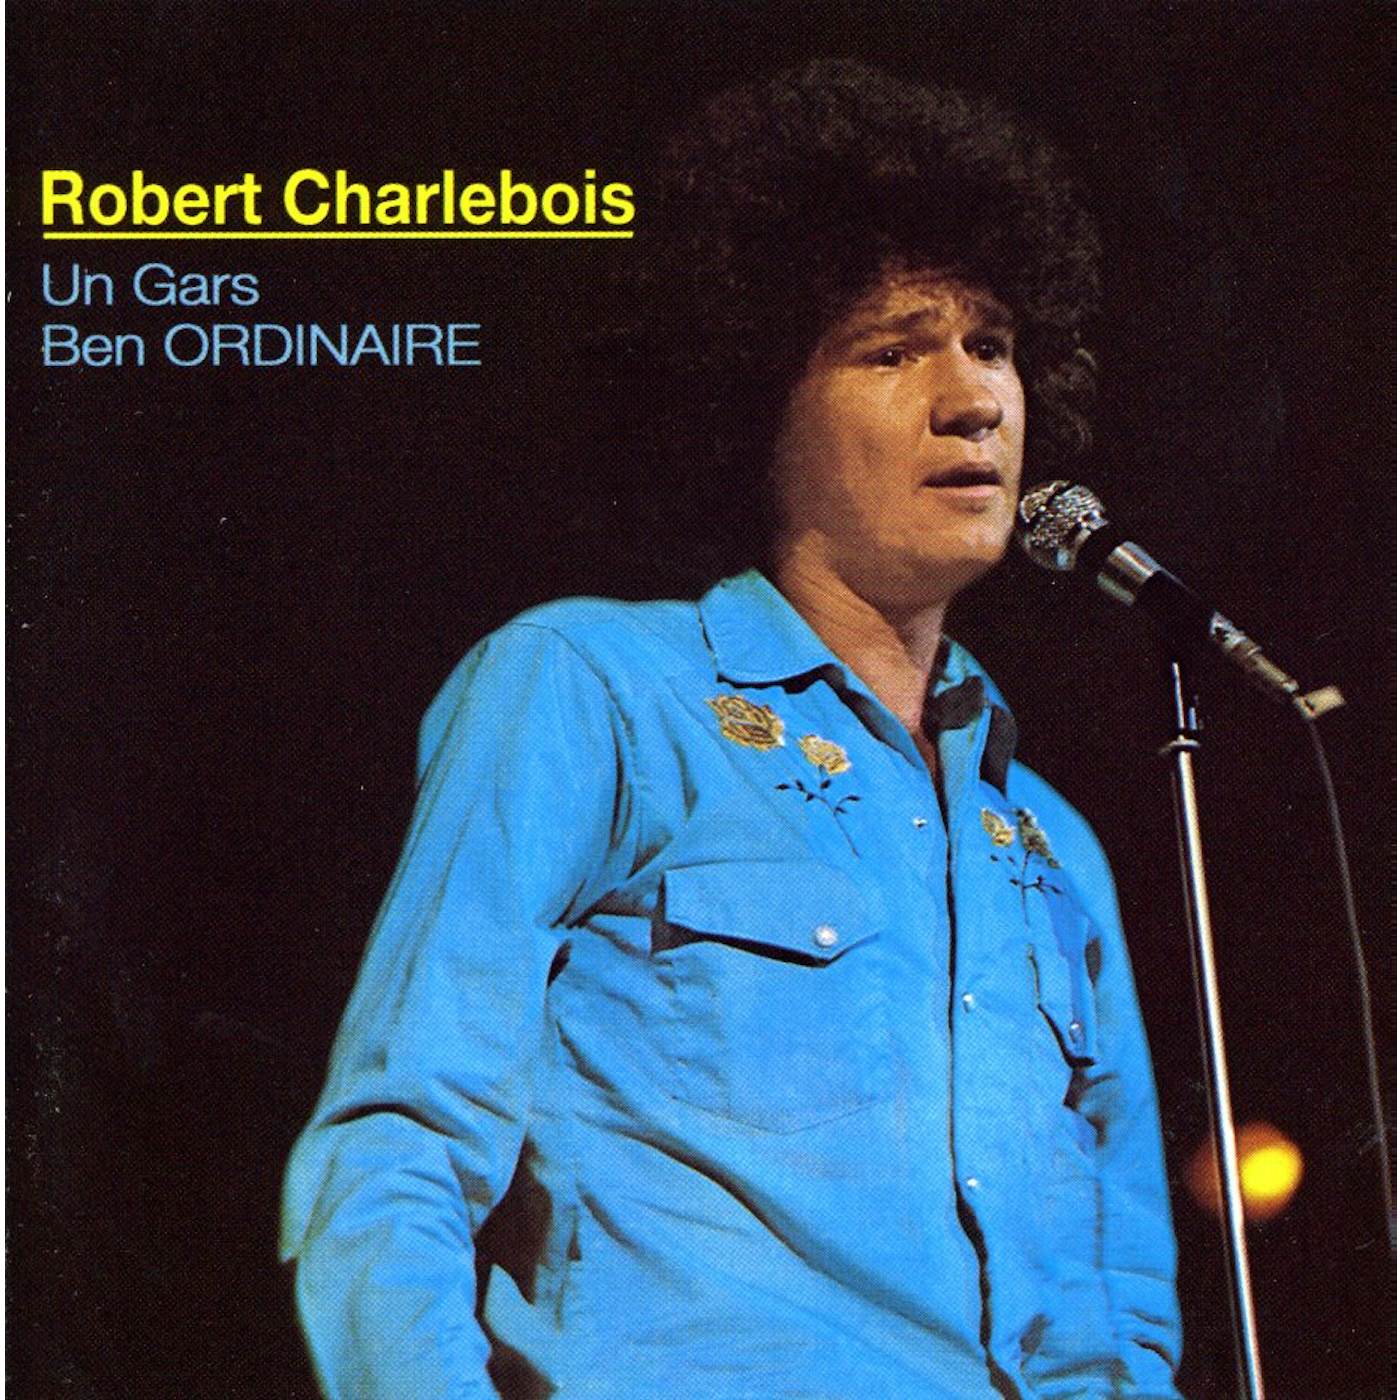 Robert Charlebois UN GARS BEN ORDINAIRE CD